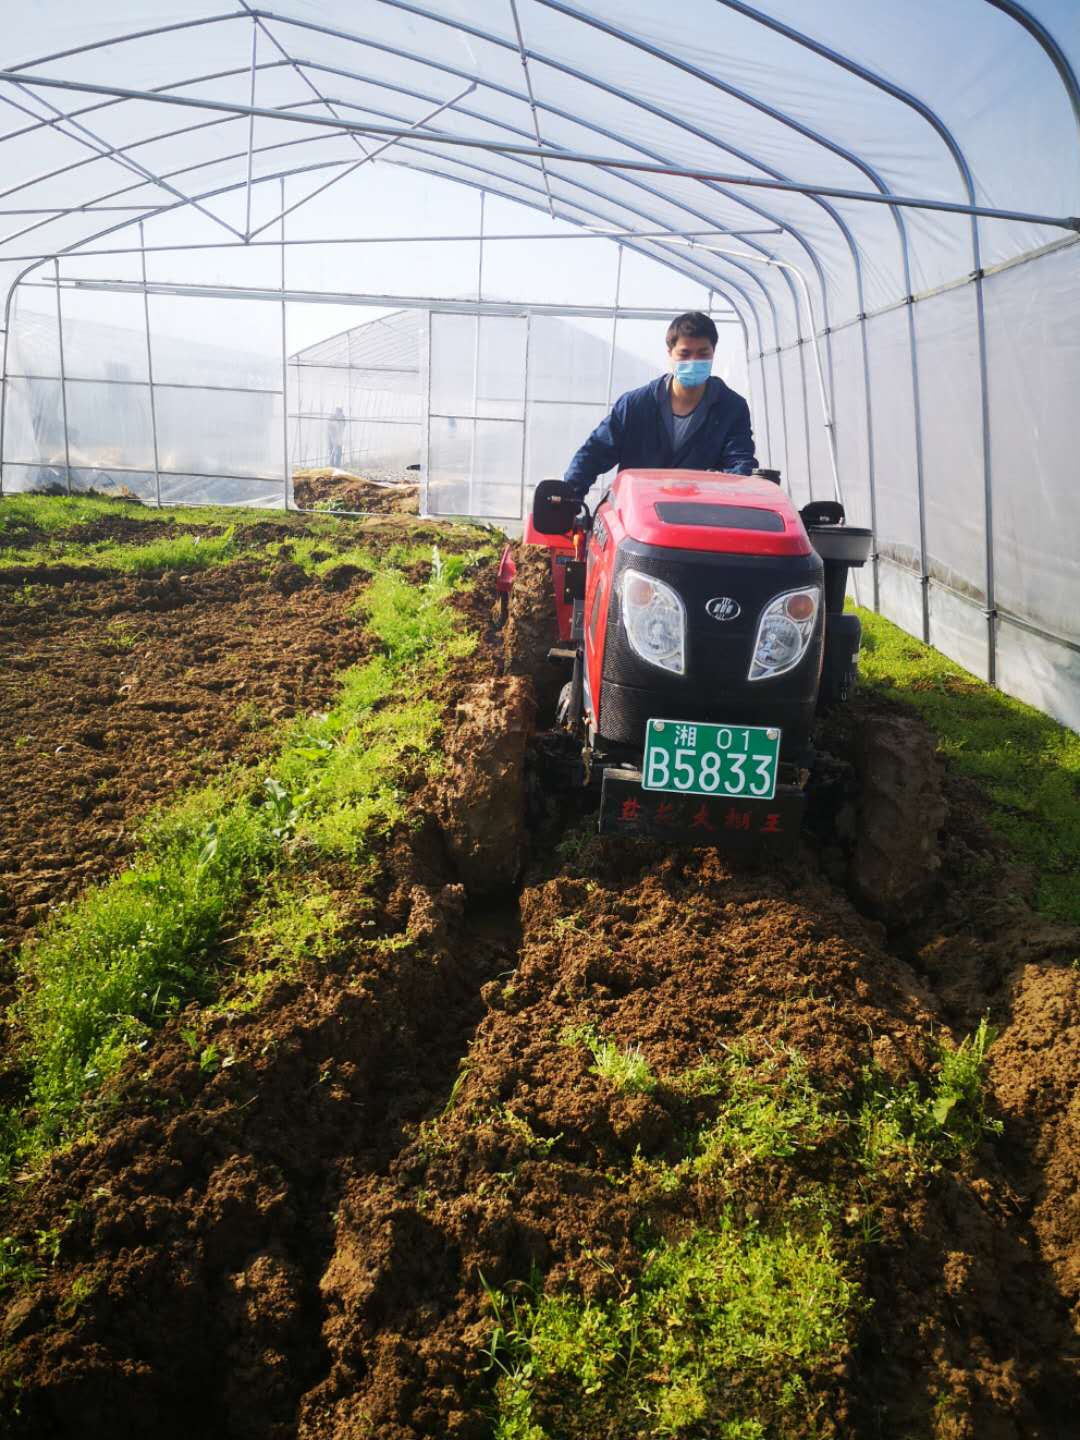 长沙市望城区设施蔬菜示范园内一辆翻耕机正在翻耕。朱华摄影